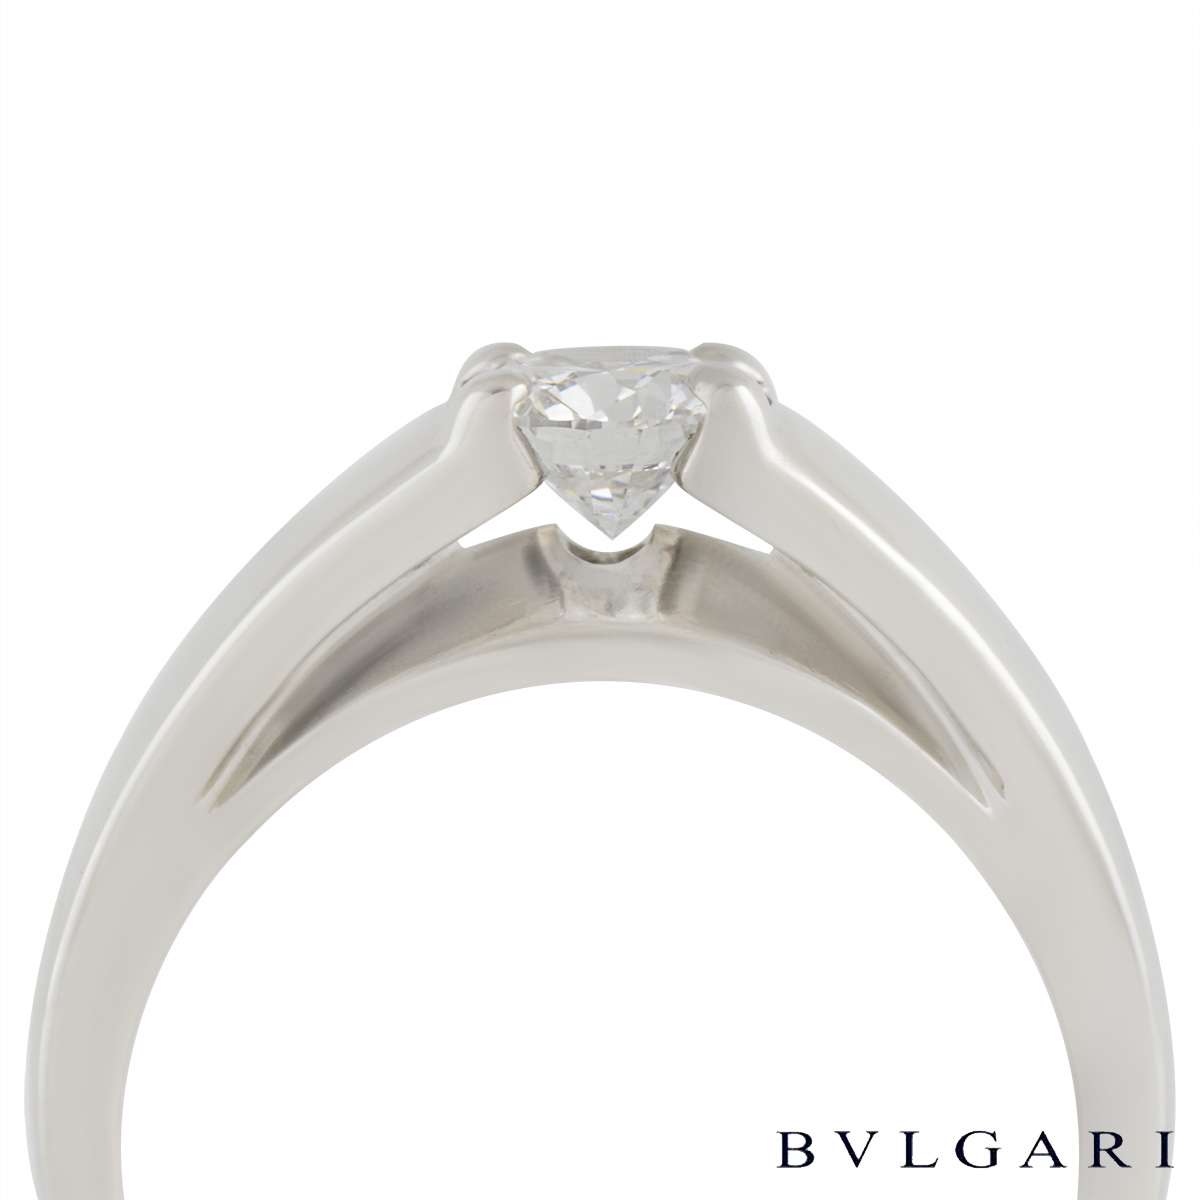 bvlgari marry me ring price